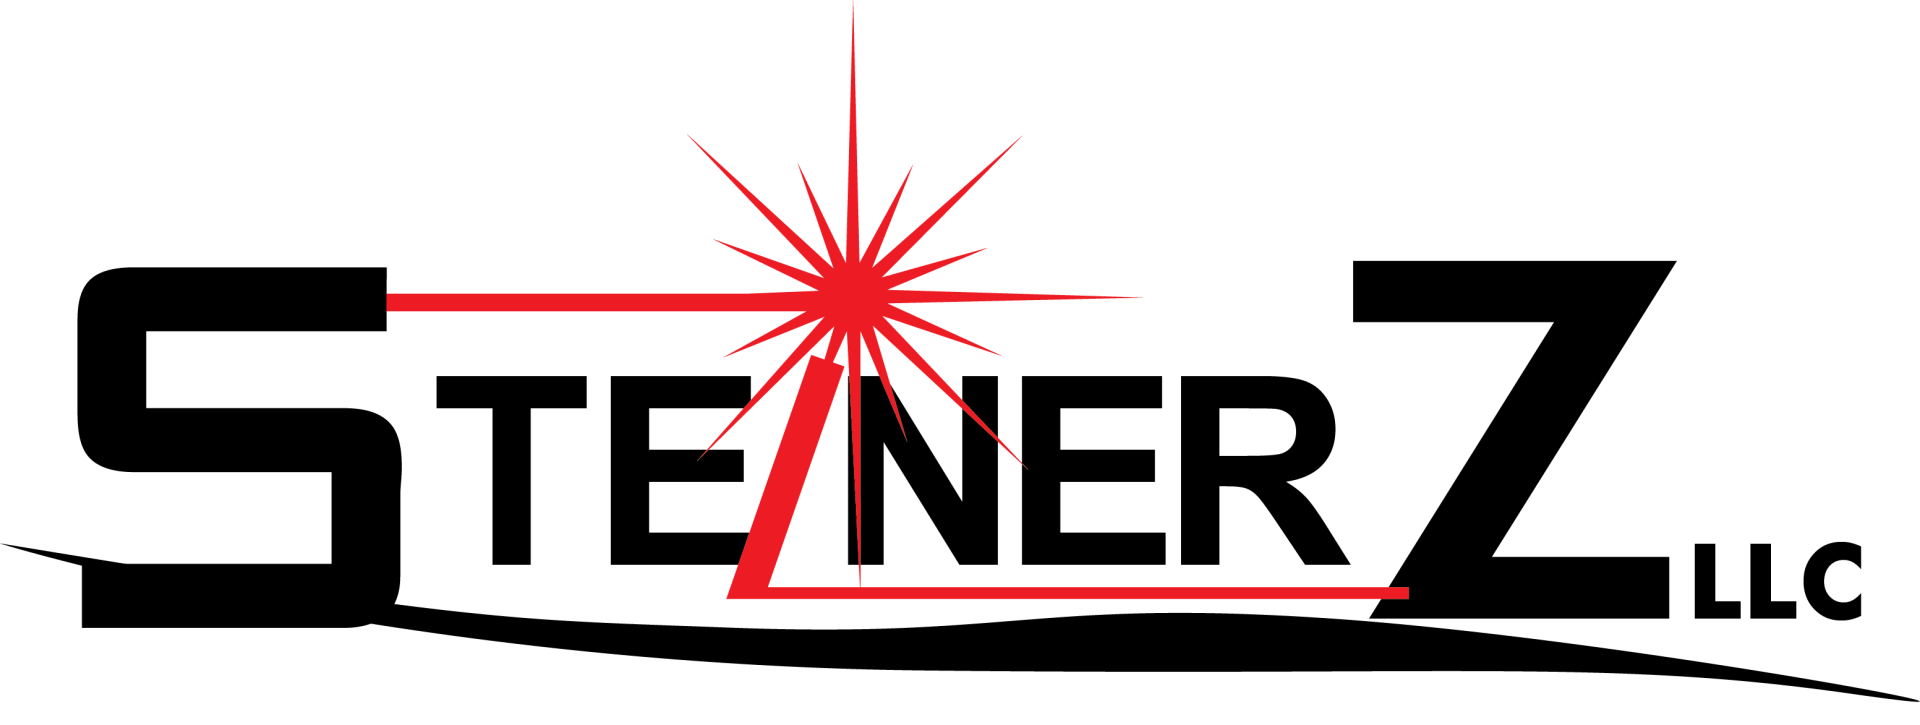 SteinerZ LLC logo